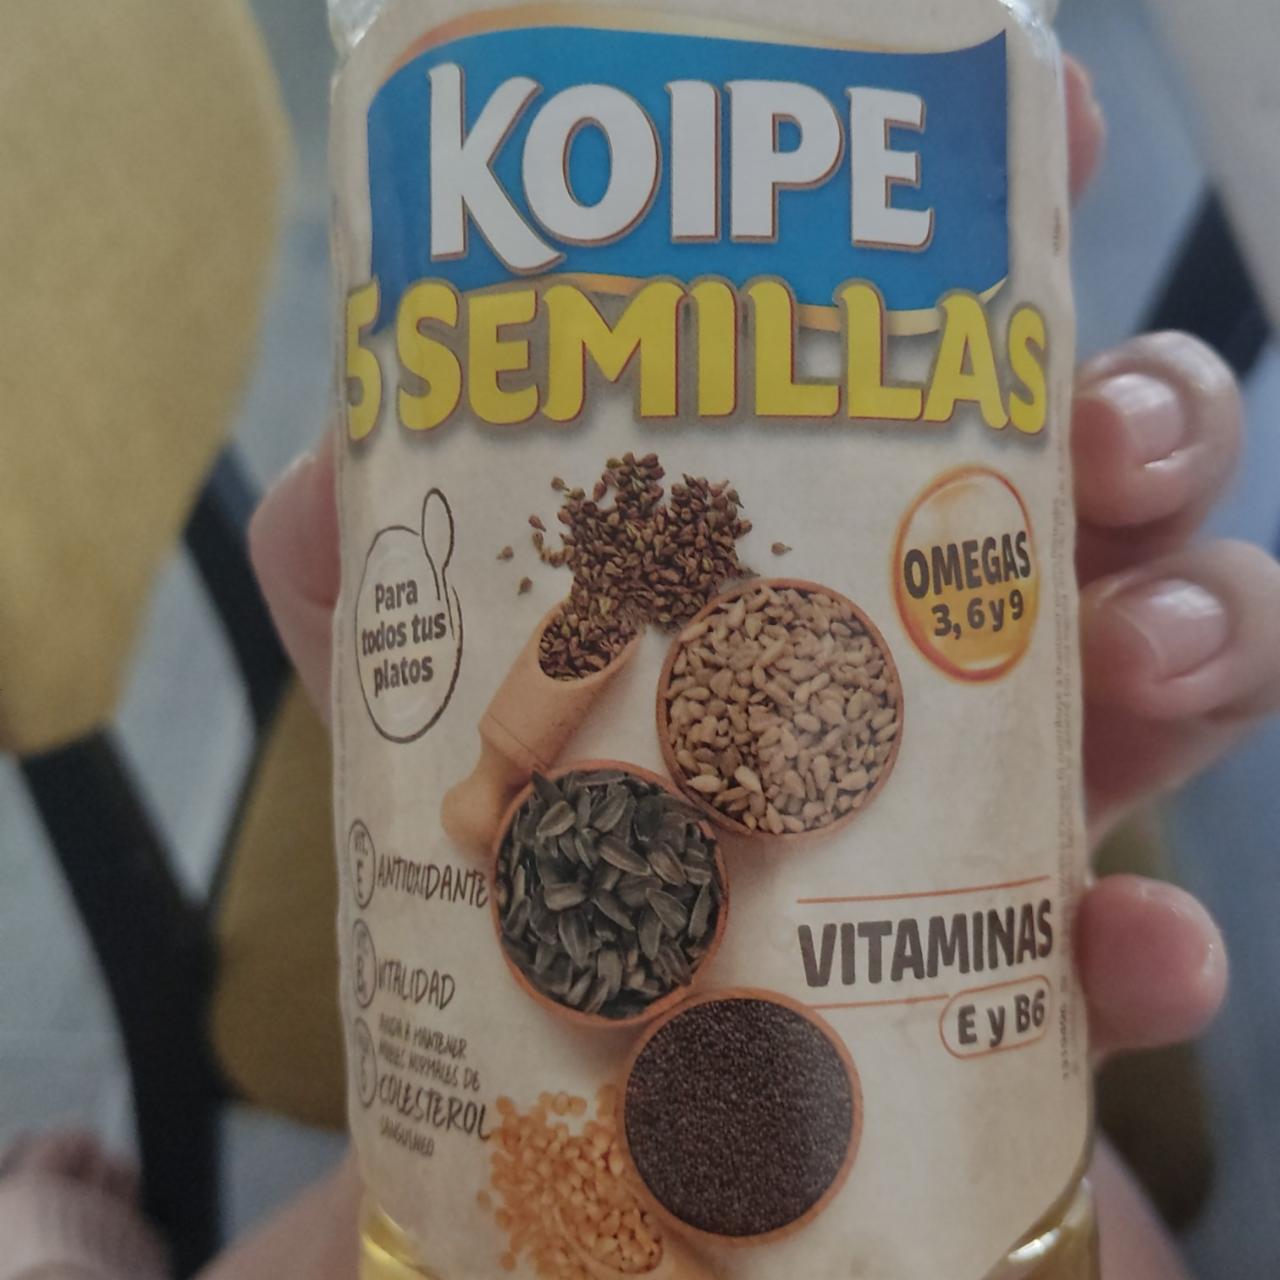 Фото - масло из 5 семян Koipe